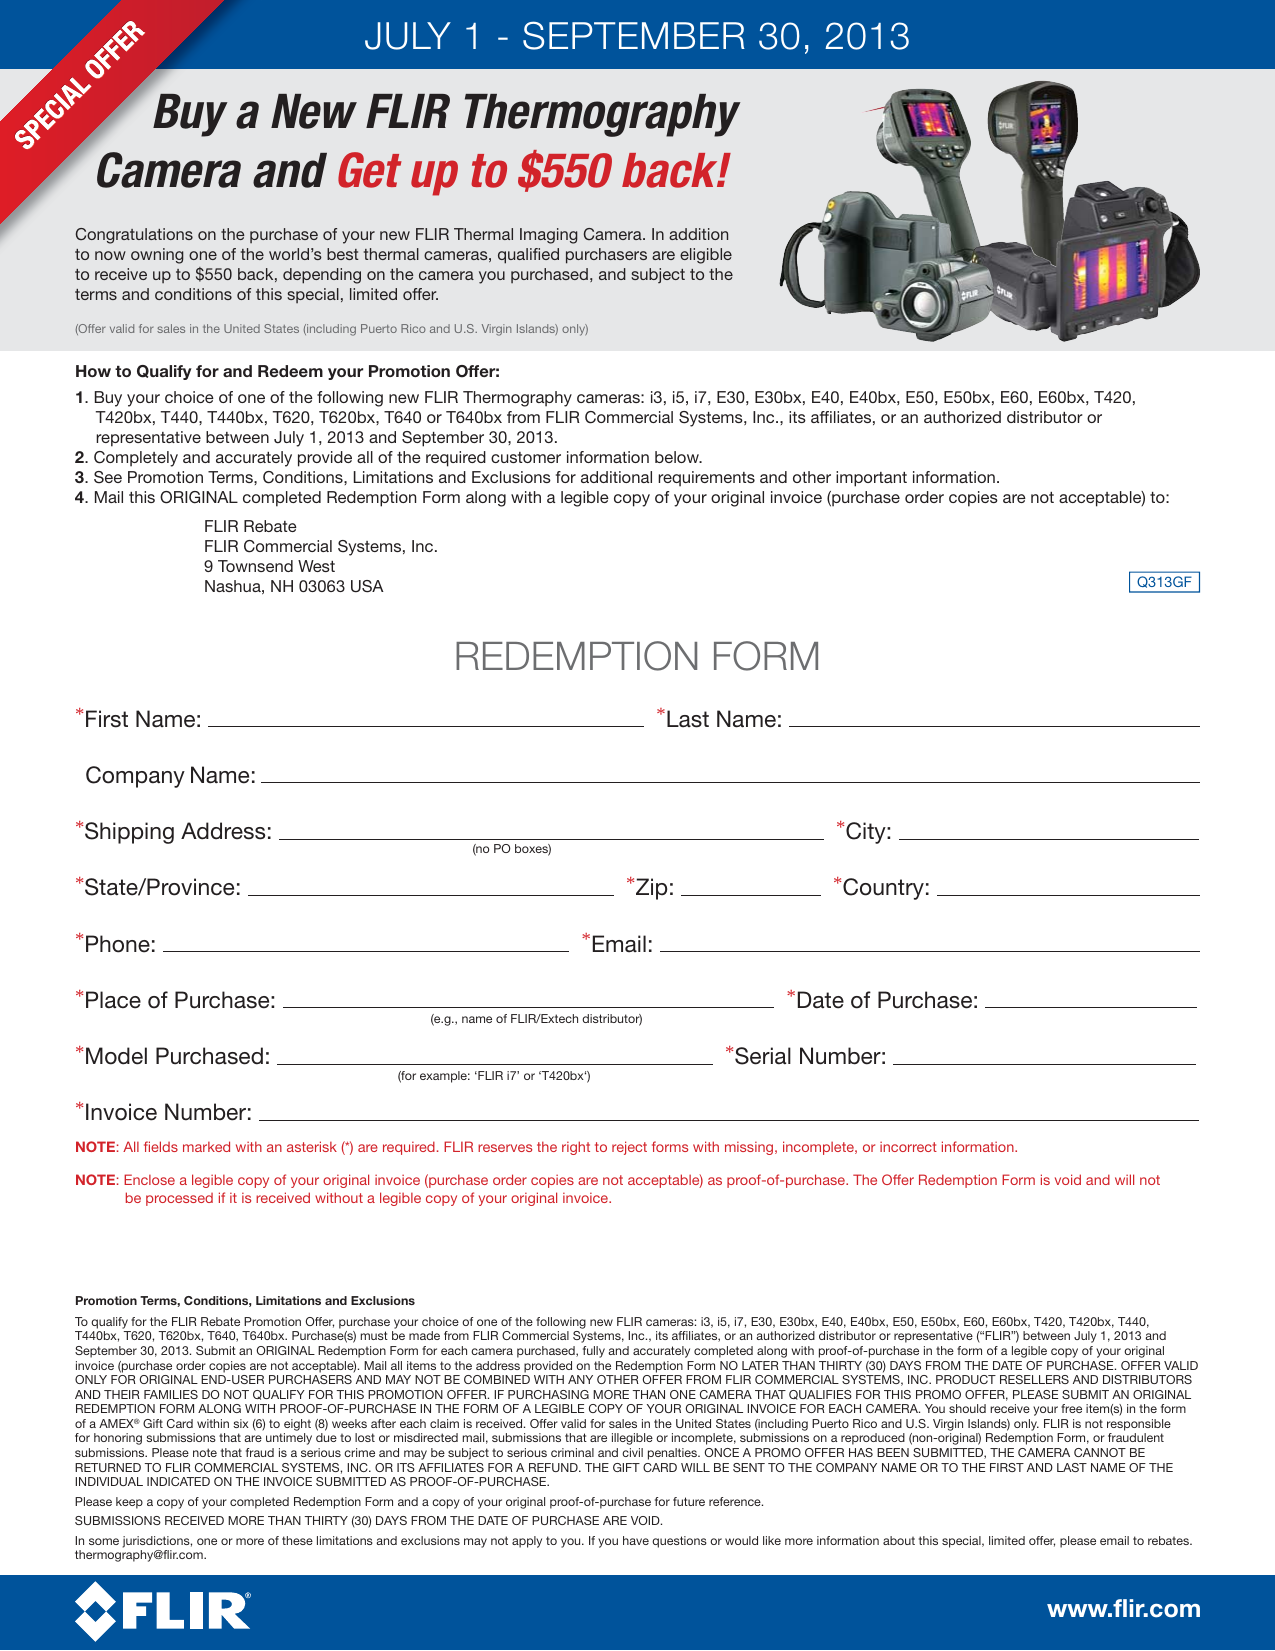 Page 2 of 2 - Redemption Form - New I3  2013Q3-FLIR-Rebate-Redemption-Form